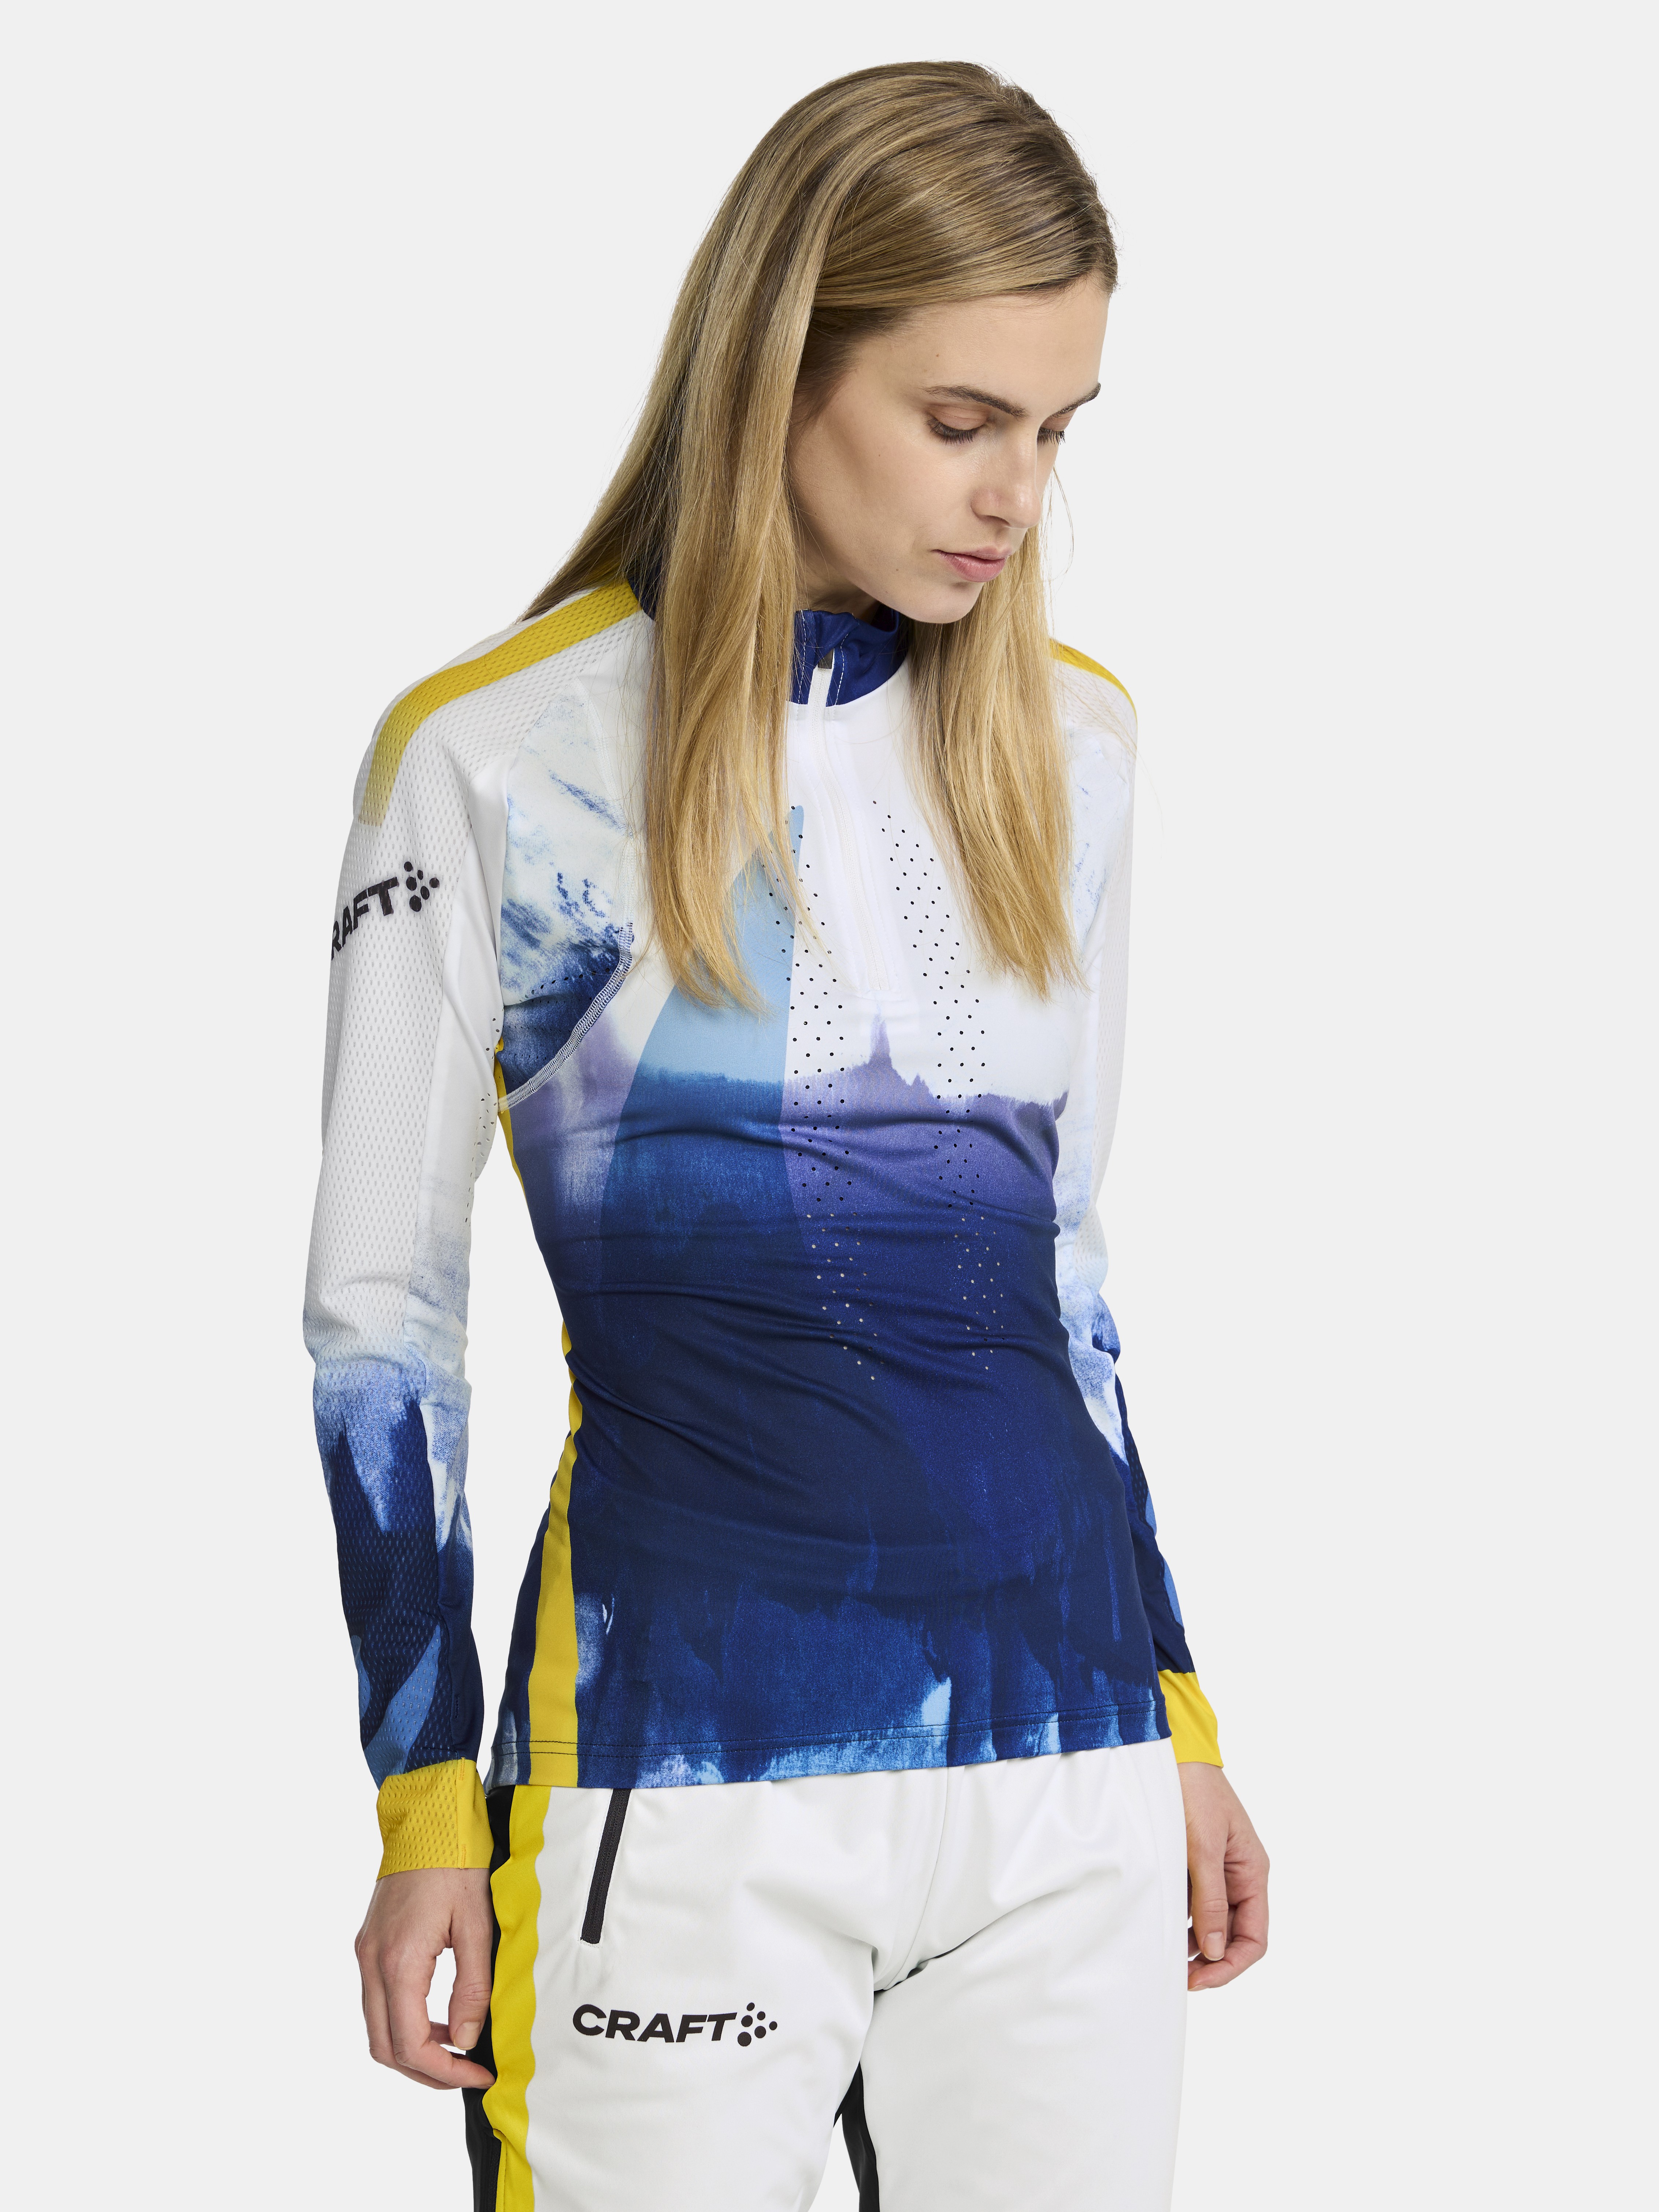 Ski Team Stratum Sew Tight - White